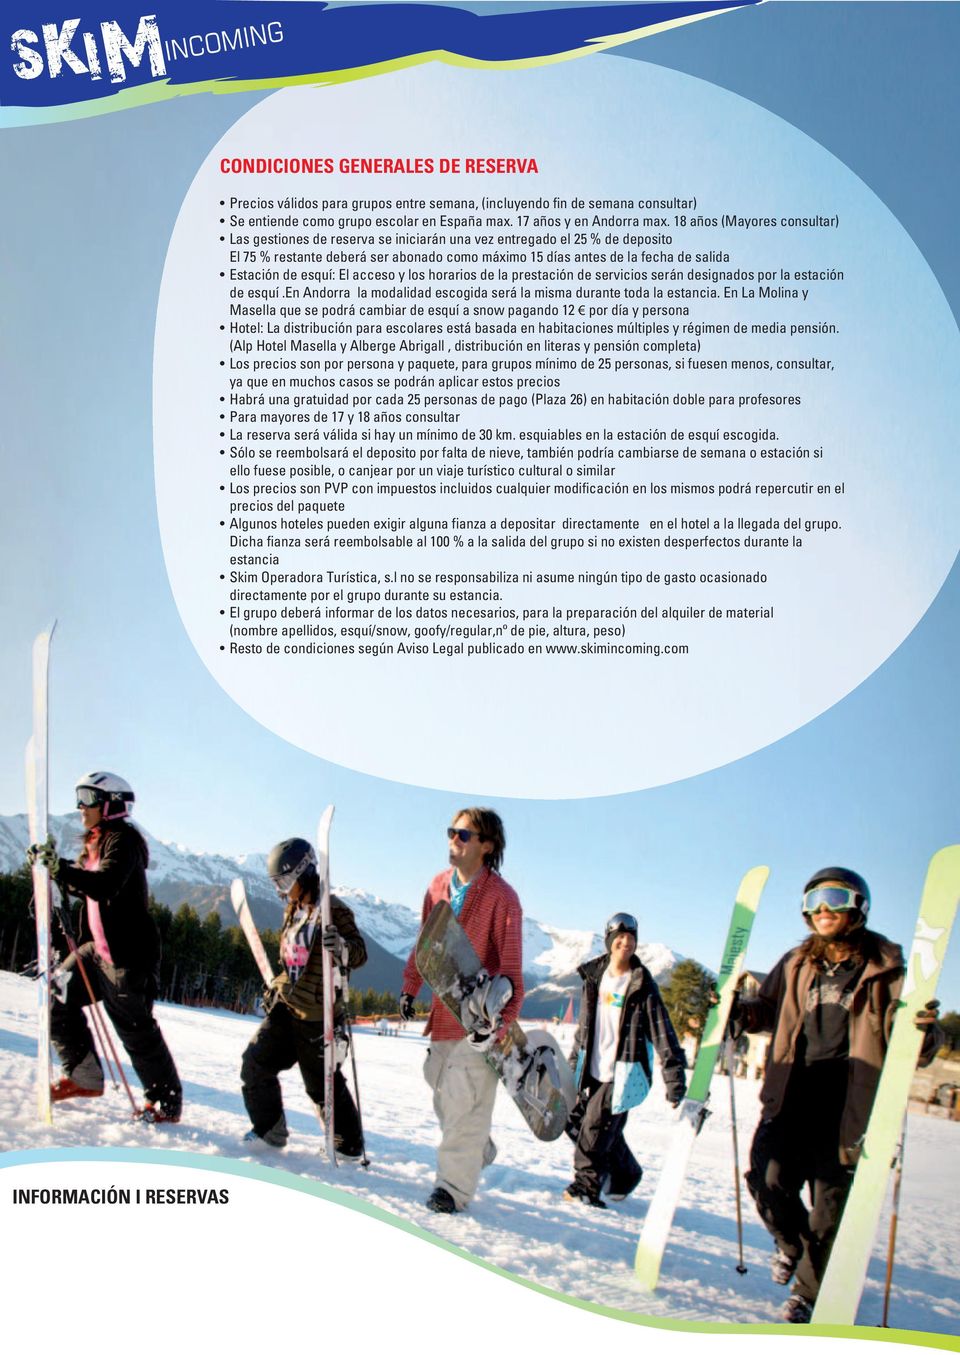 esquí: El acceso y los horarios de la prestación de servicios serán designados por la estación de esquí.en Andorra la modalidad escogida será la misma durante toda la estancia.